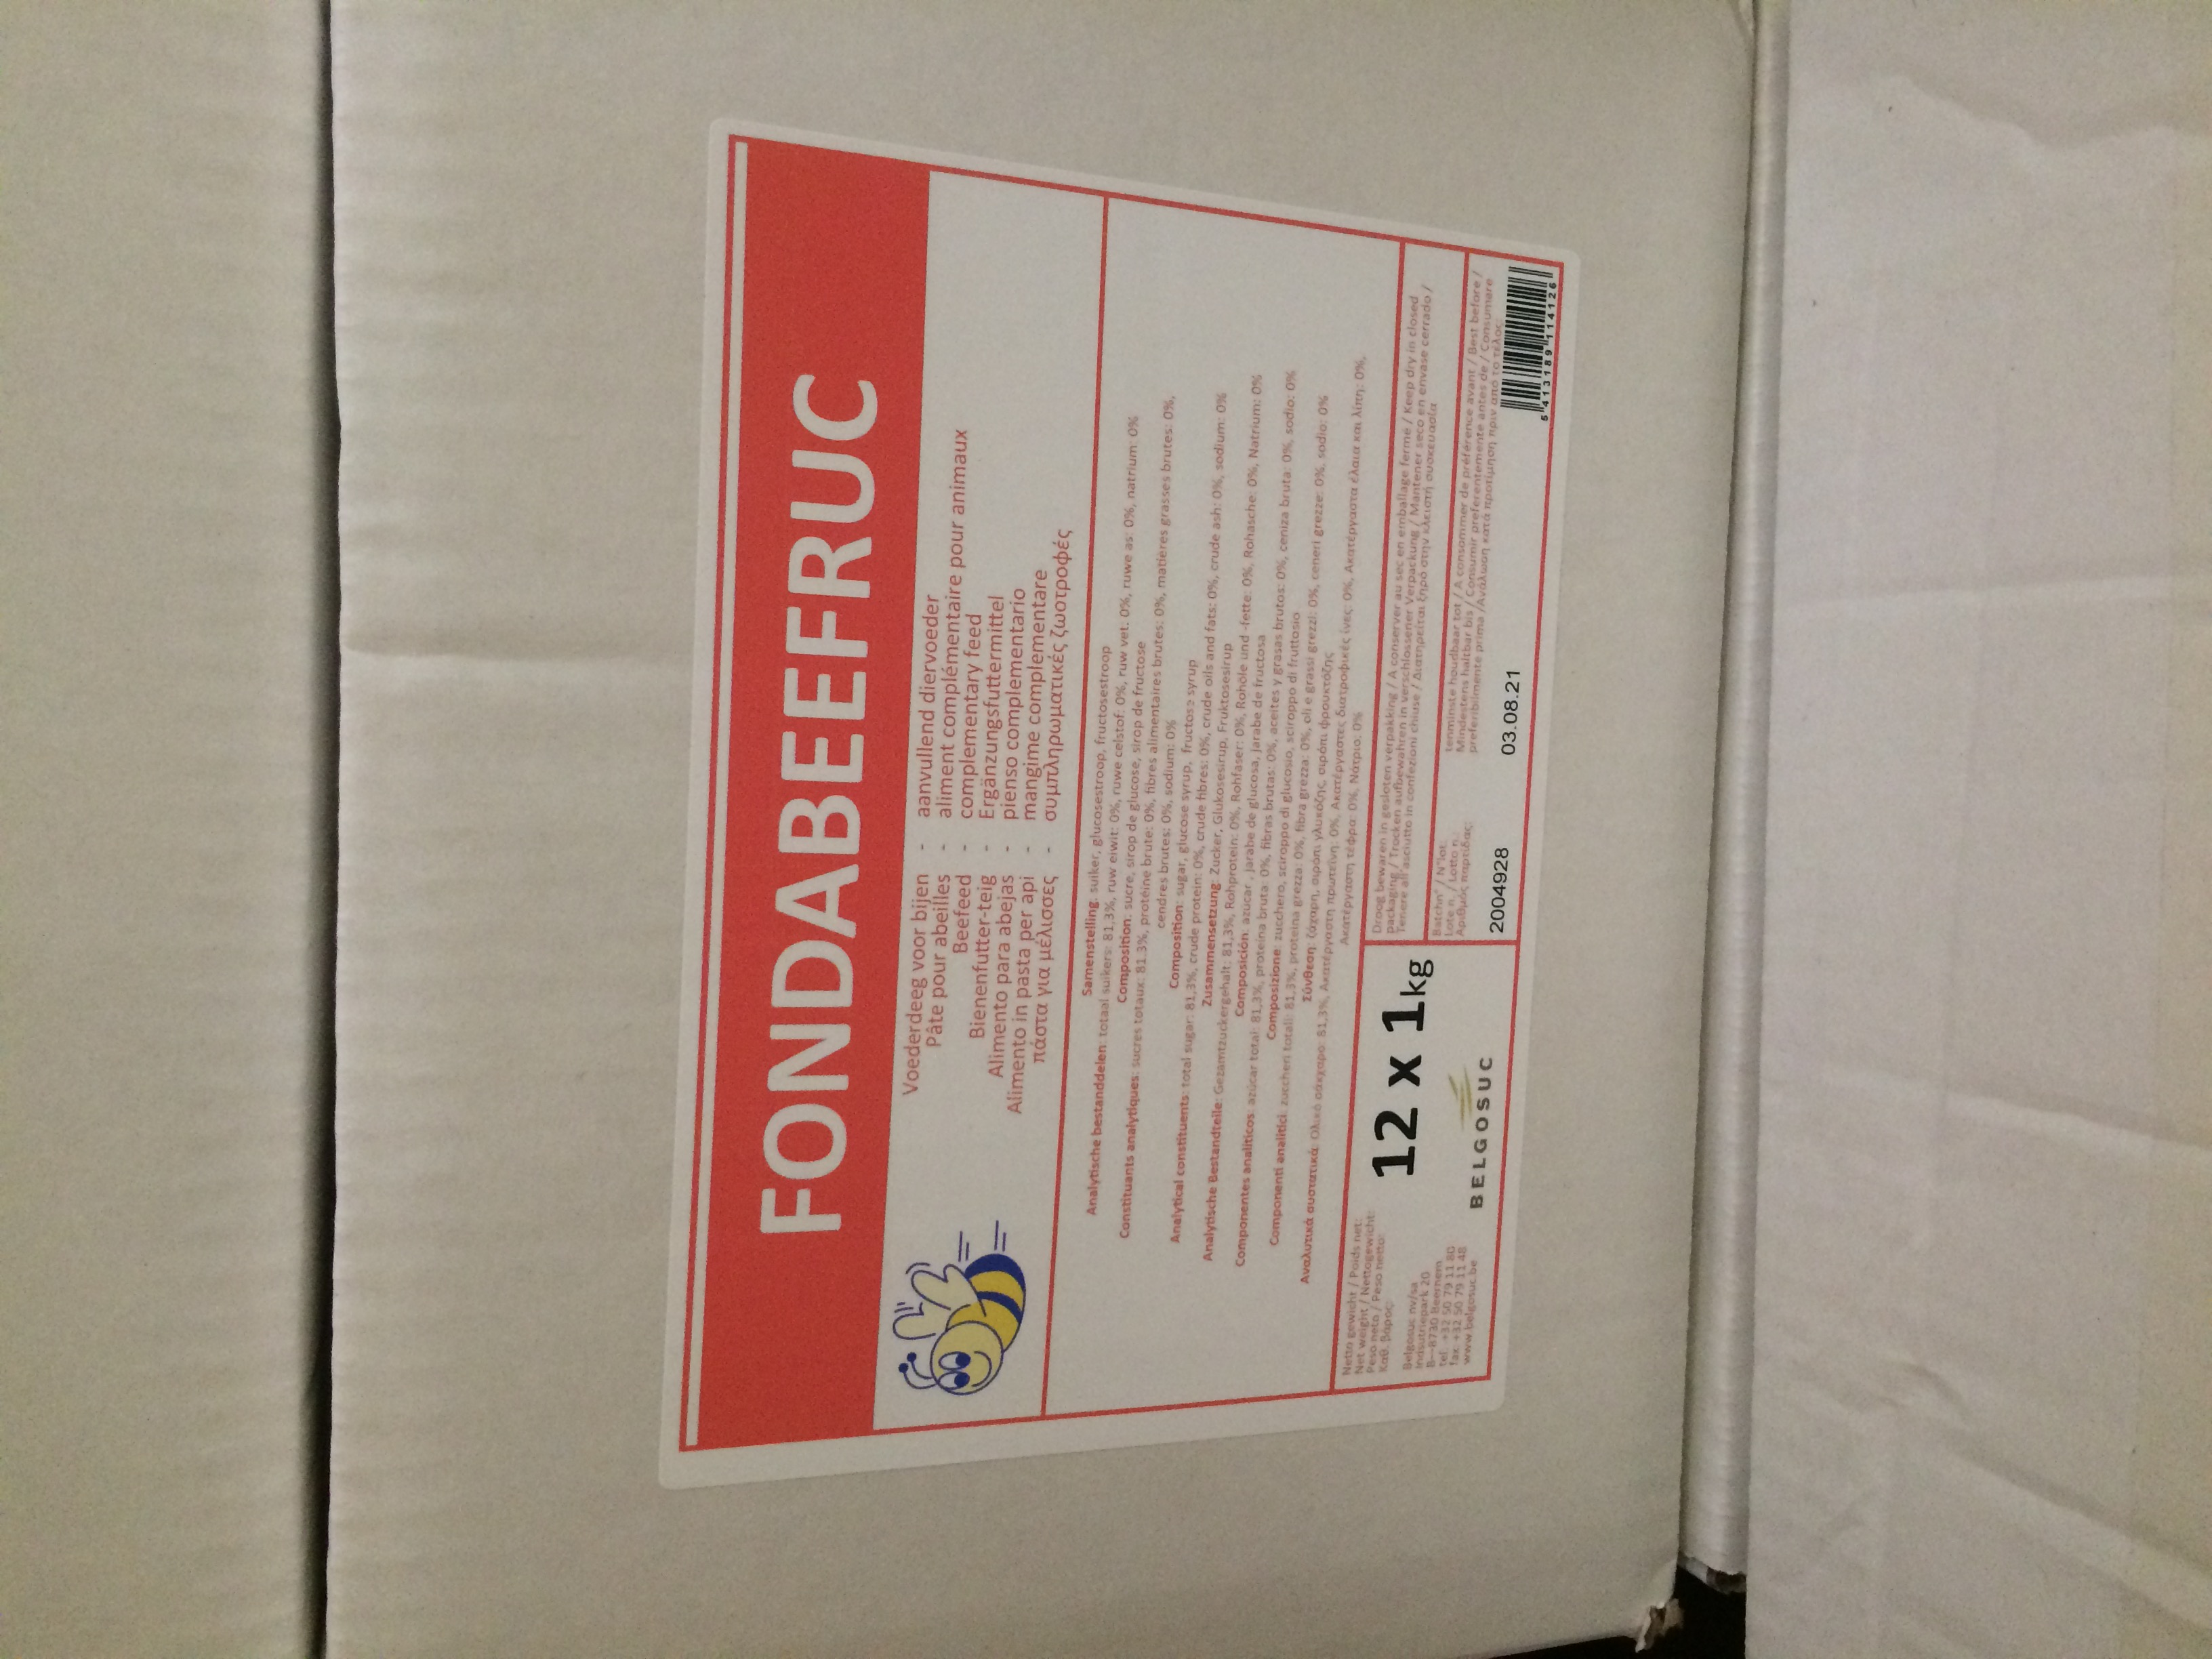 Fondabeefruc-suikerdeeg 12 x 1 kg in doos kopen bij Imkerij De Linde